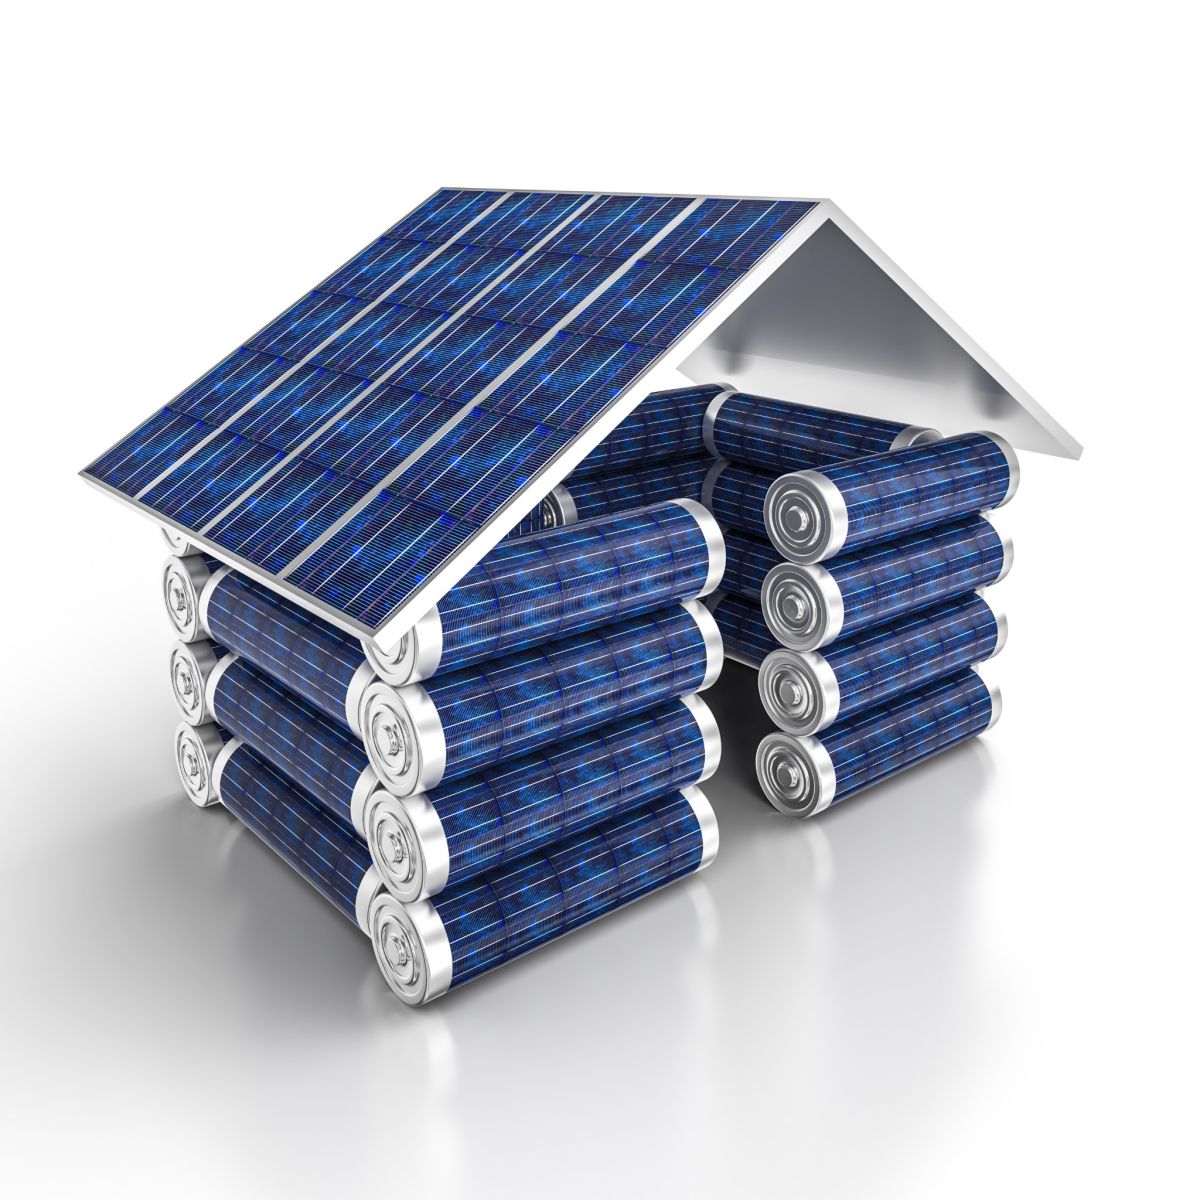 In Europa oltre 1 milione di case alimentate da batterie per il fotovoltaico